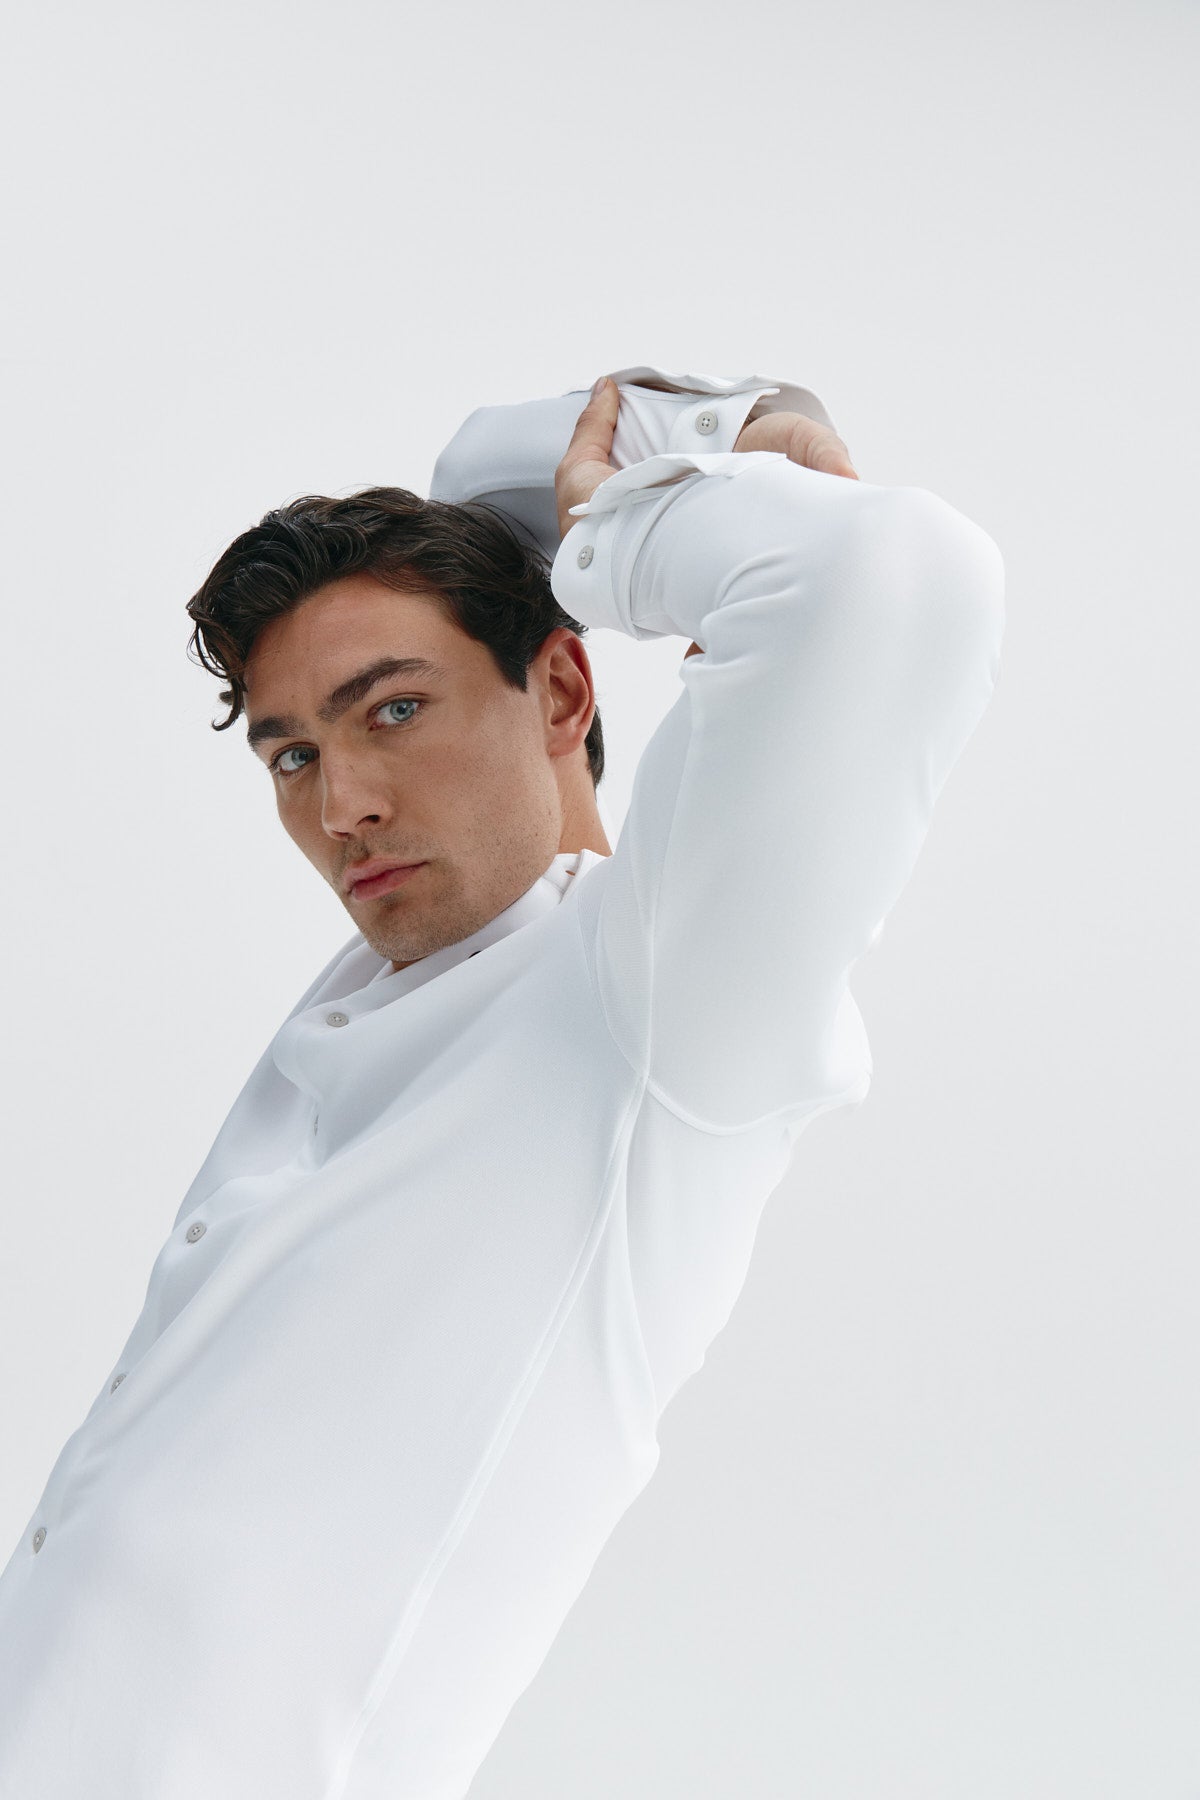 Camisa casual blanca para hombre sin arrugas ni manchas. Manga larga, antiarrugas y antimanchas. Foto flexibilidad